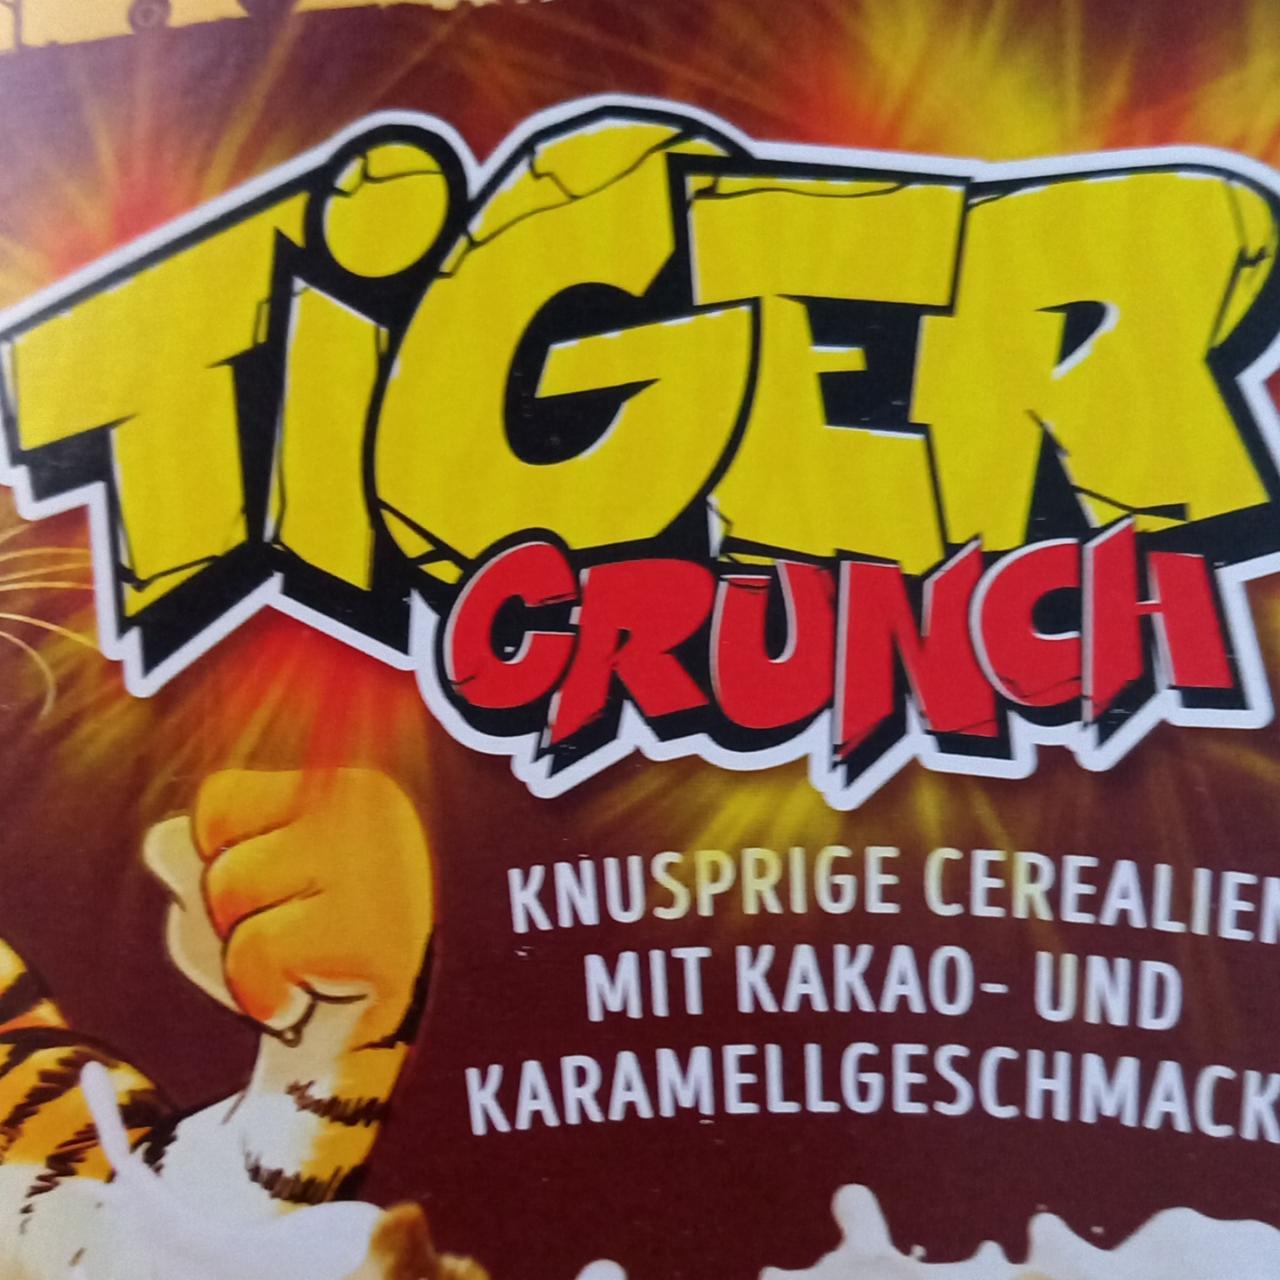 Fotografie - Tiger crunch mit Kakao- und Karamellgeschmackt Crownfield